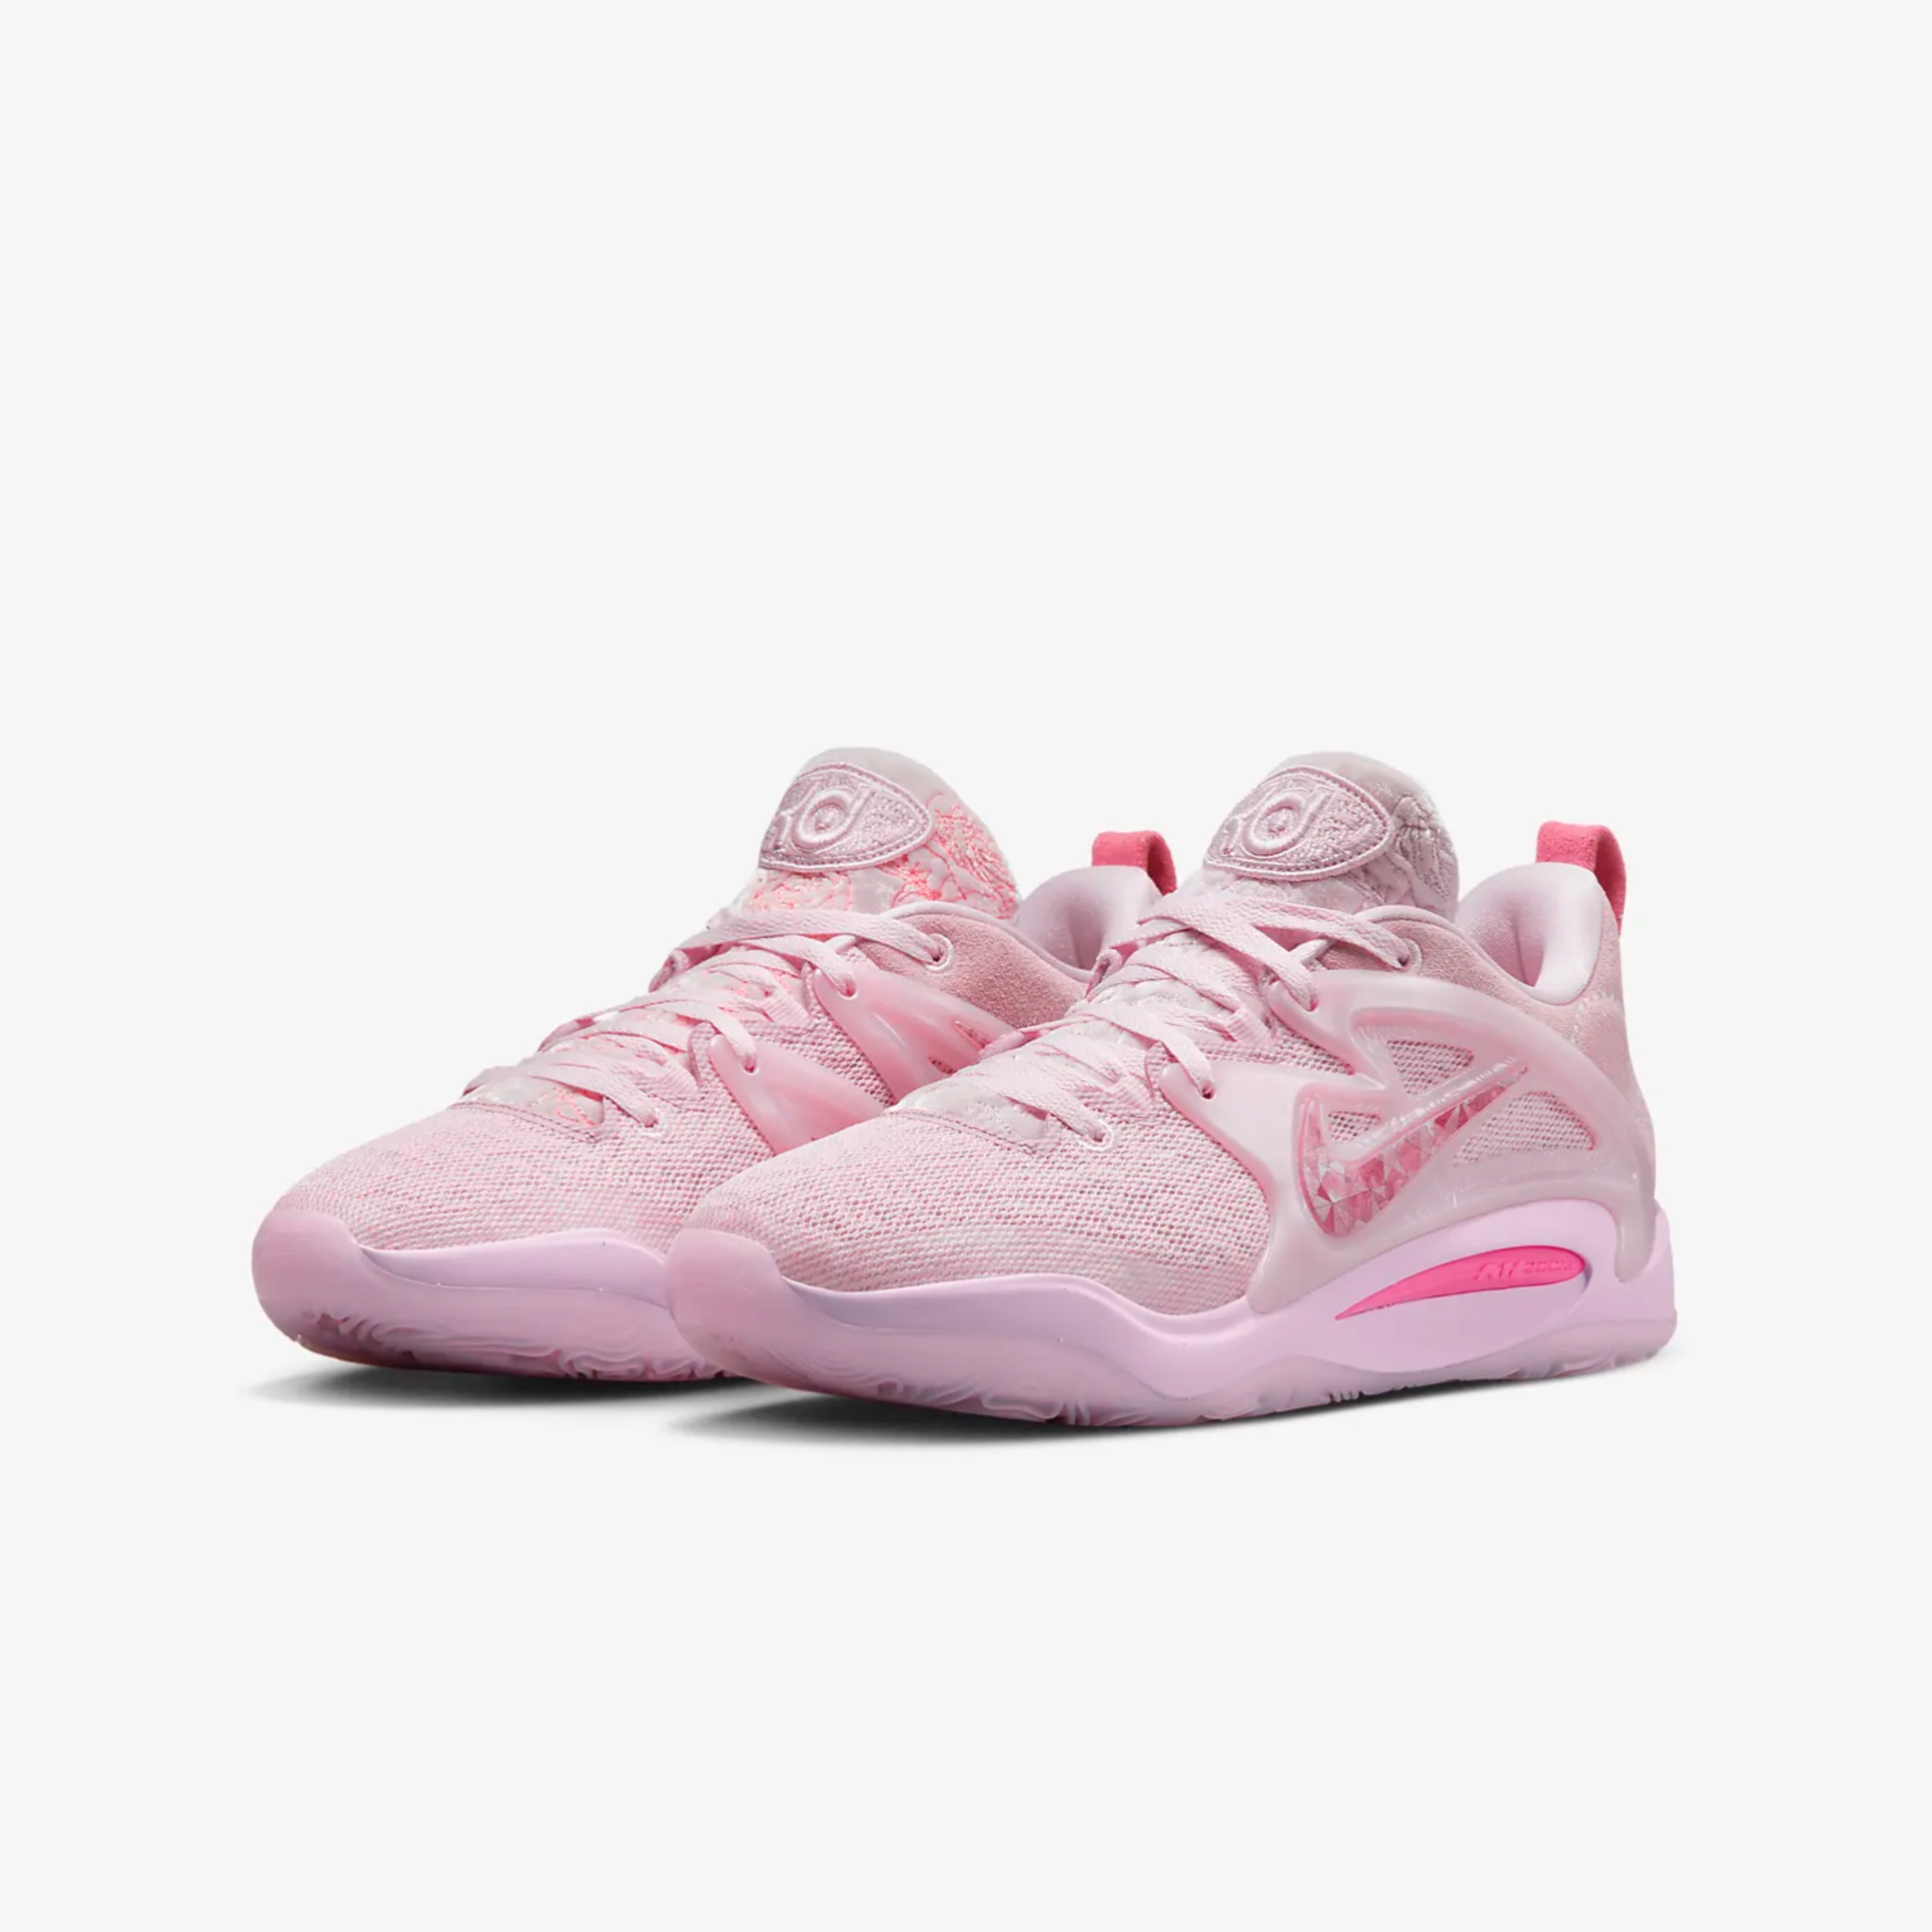 Nike KD15 Pink